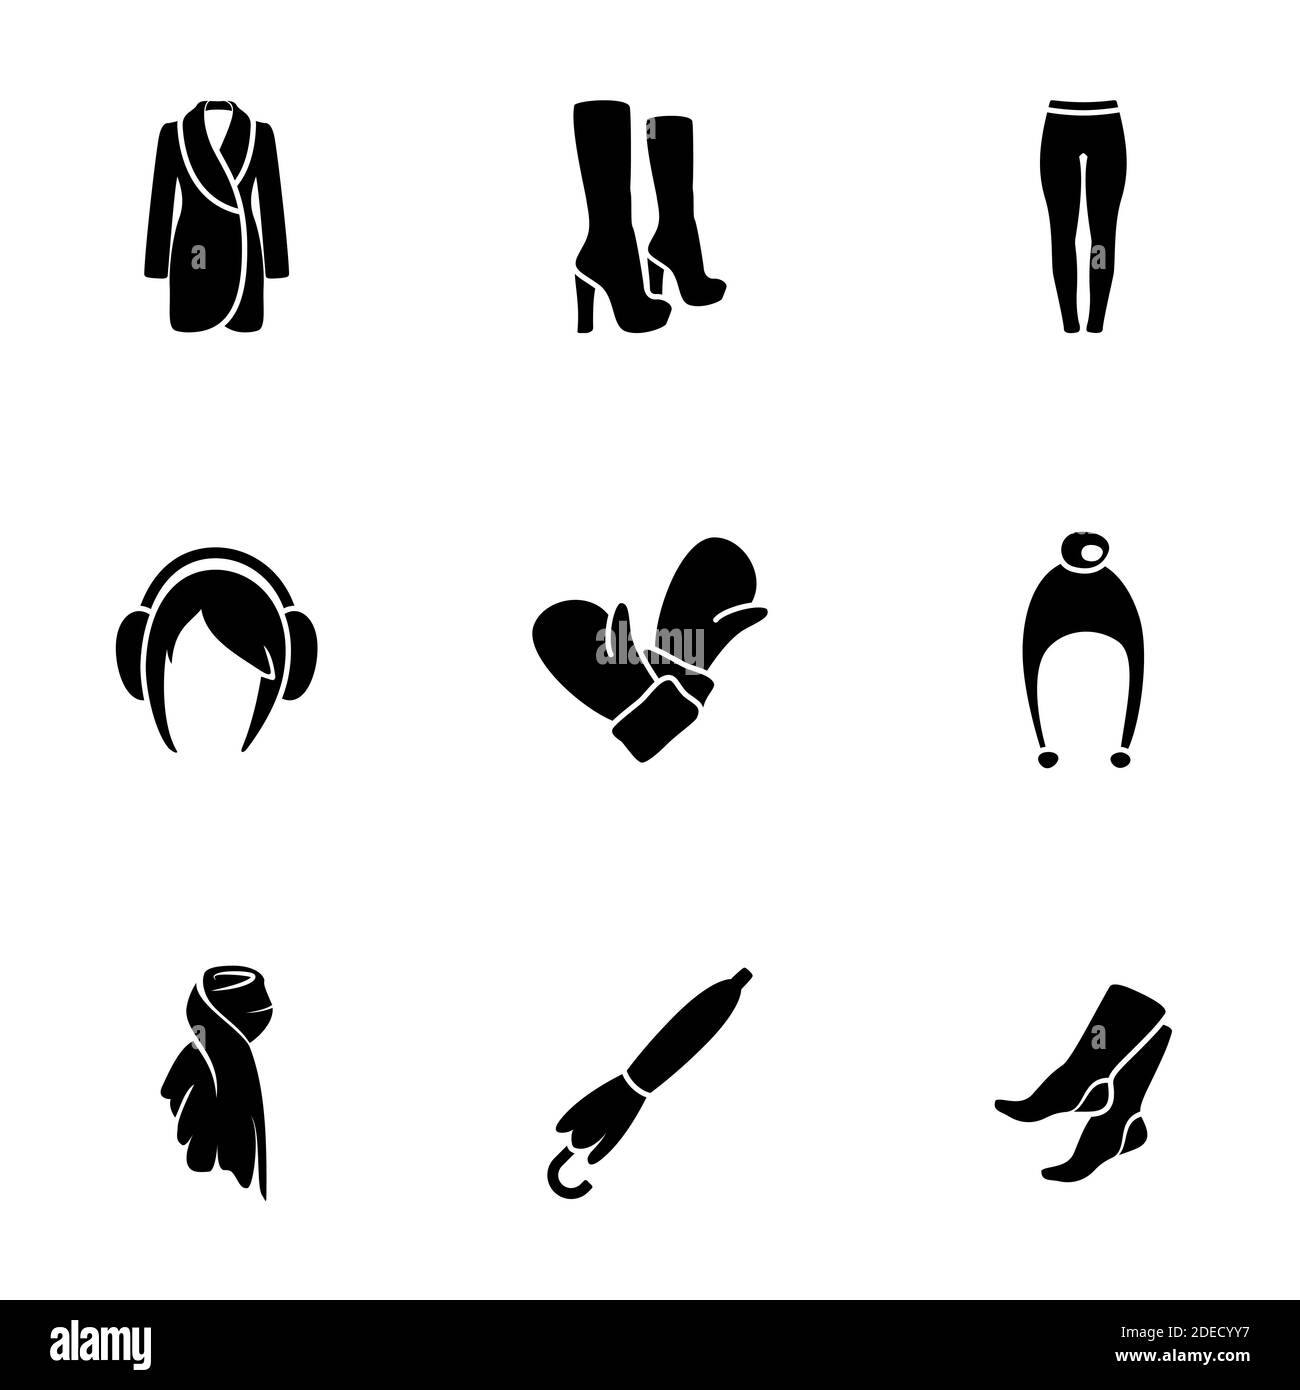 Set von einfachen Symbolen auf ein Thema Damenbekleidung, Vektor, Design, Sammlung, flach, Zeichen, Symbol, Element, Objekt, Illustration, isoliert. Weiße Rückenfarbe Stock Vektor